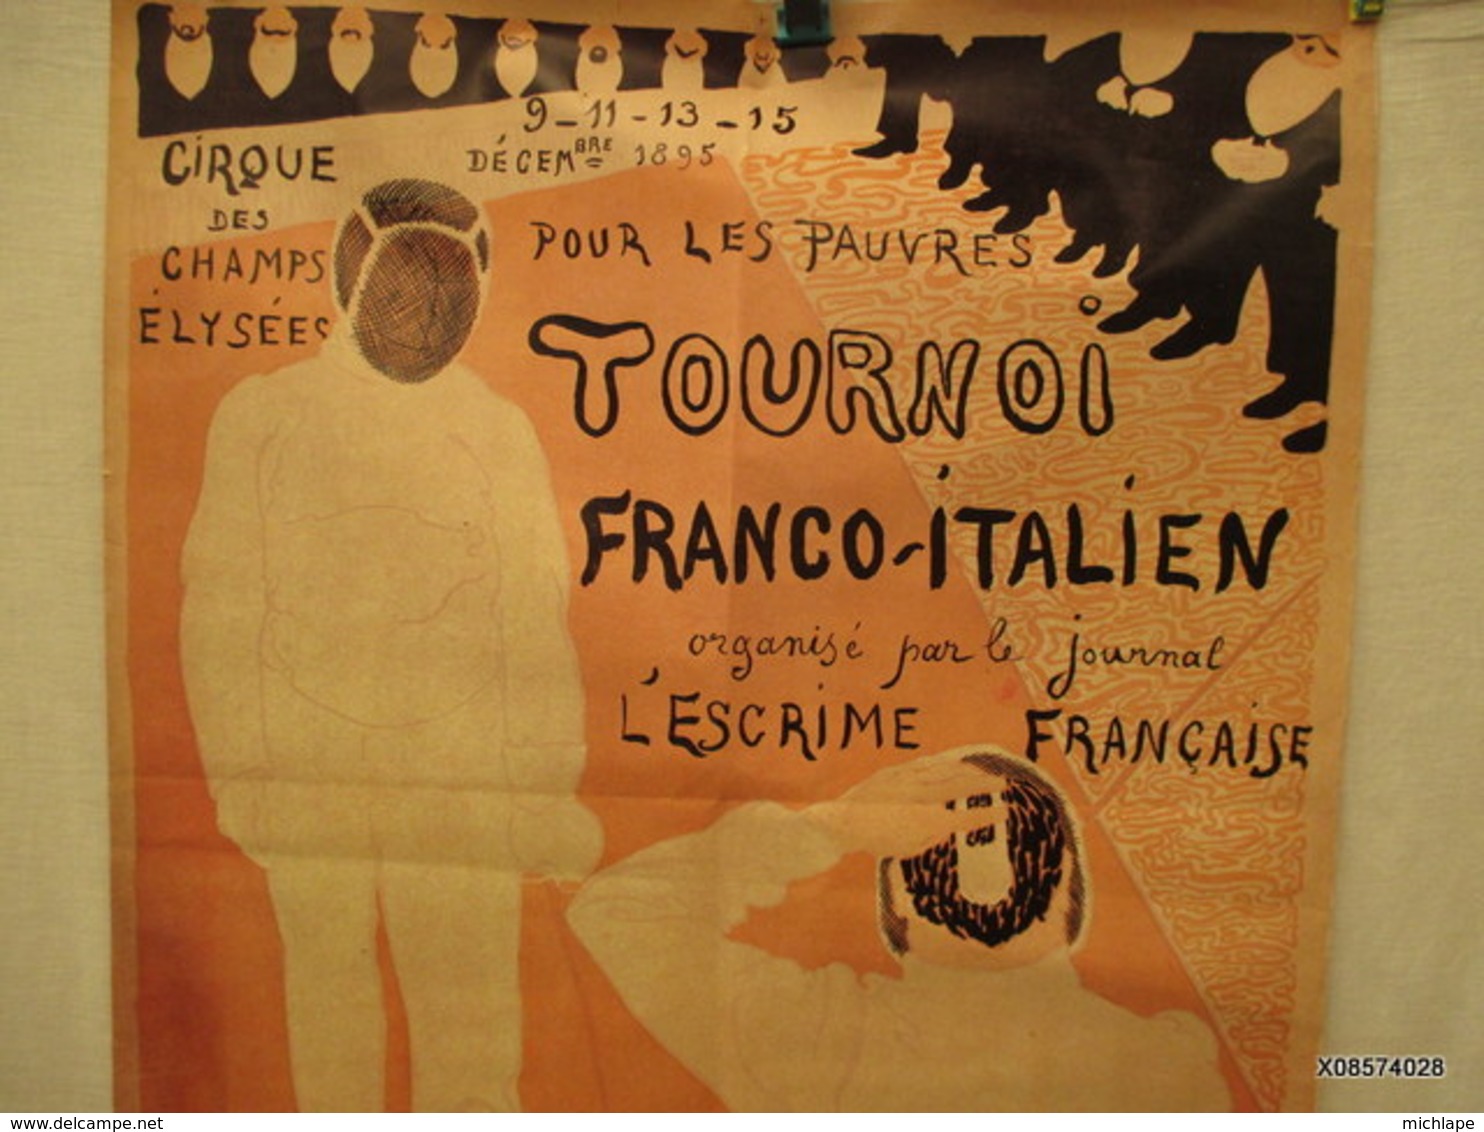 affiche pliée - poster -  repro   -  le cirque des champs  Elysées -escrime  tournoi Franco- Italien  60 cm sur 78 cm